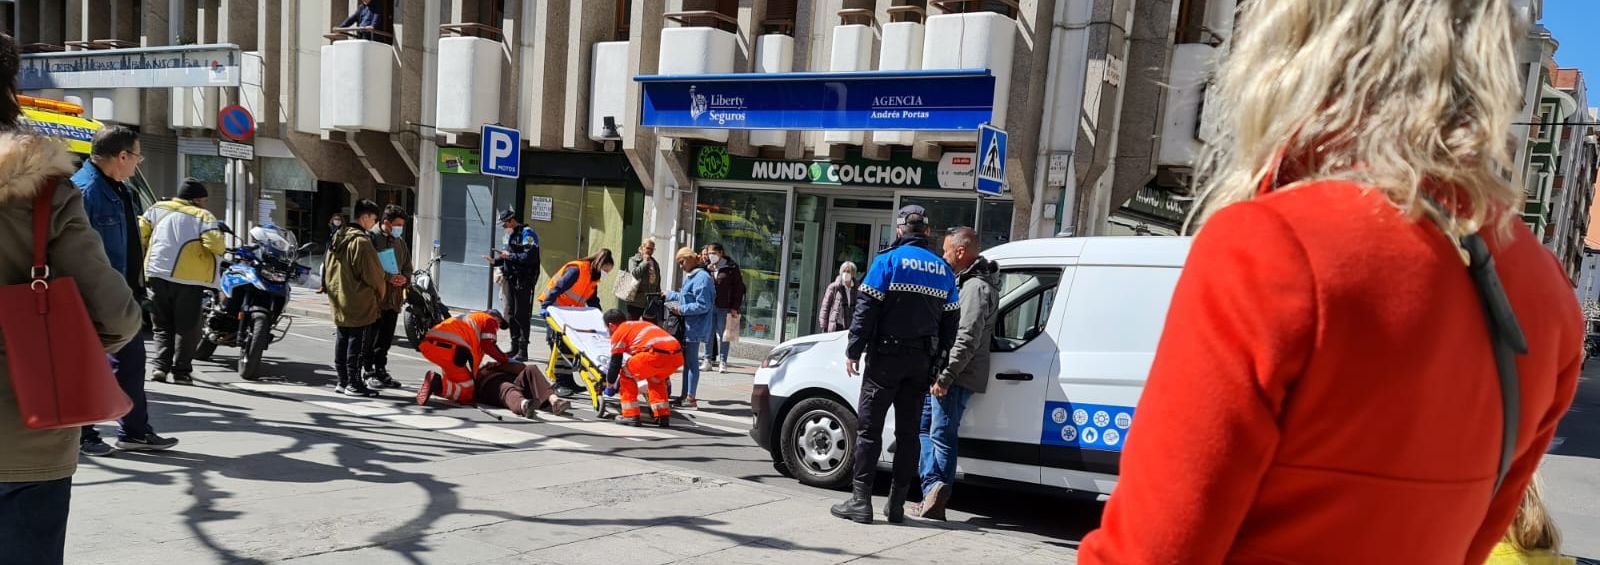 Una mujer herida tras ser arrollada por un patinete en la Plaza de las Cortes de León. La mujer caminaba por un paso de peatones cuando recibió el impacto de un patinete. Emergencias Sacyl trasladó a la herida al Hospital de León.